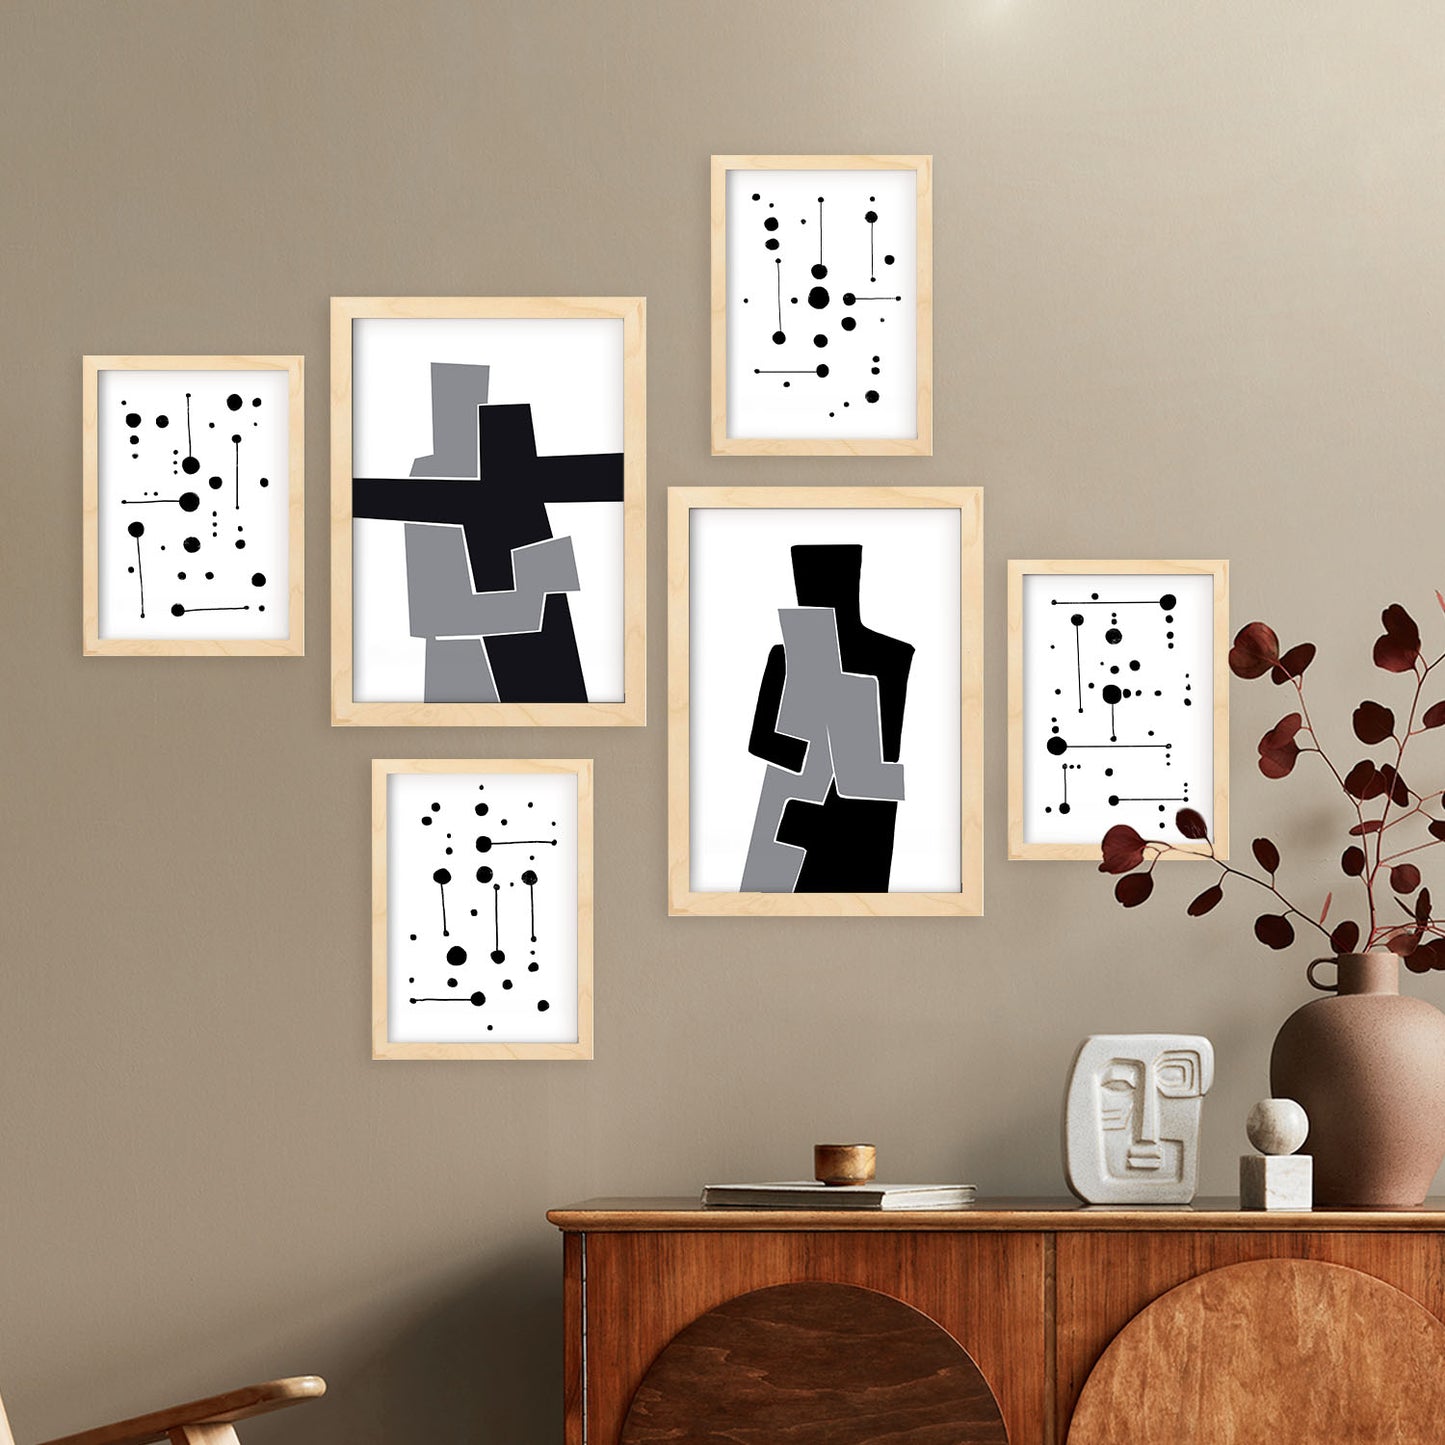 Nacnic Set de 6 Balck y blanco Posters. En Amantes abstracto. Estampados decorativos estéticos para su sala de estar, dormitorio, hogar Tamaños A4 y A3